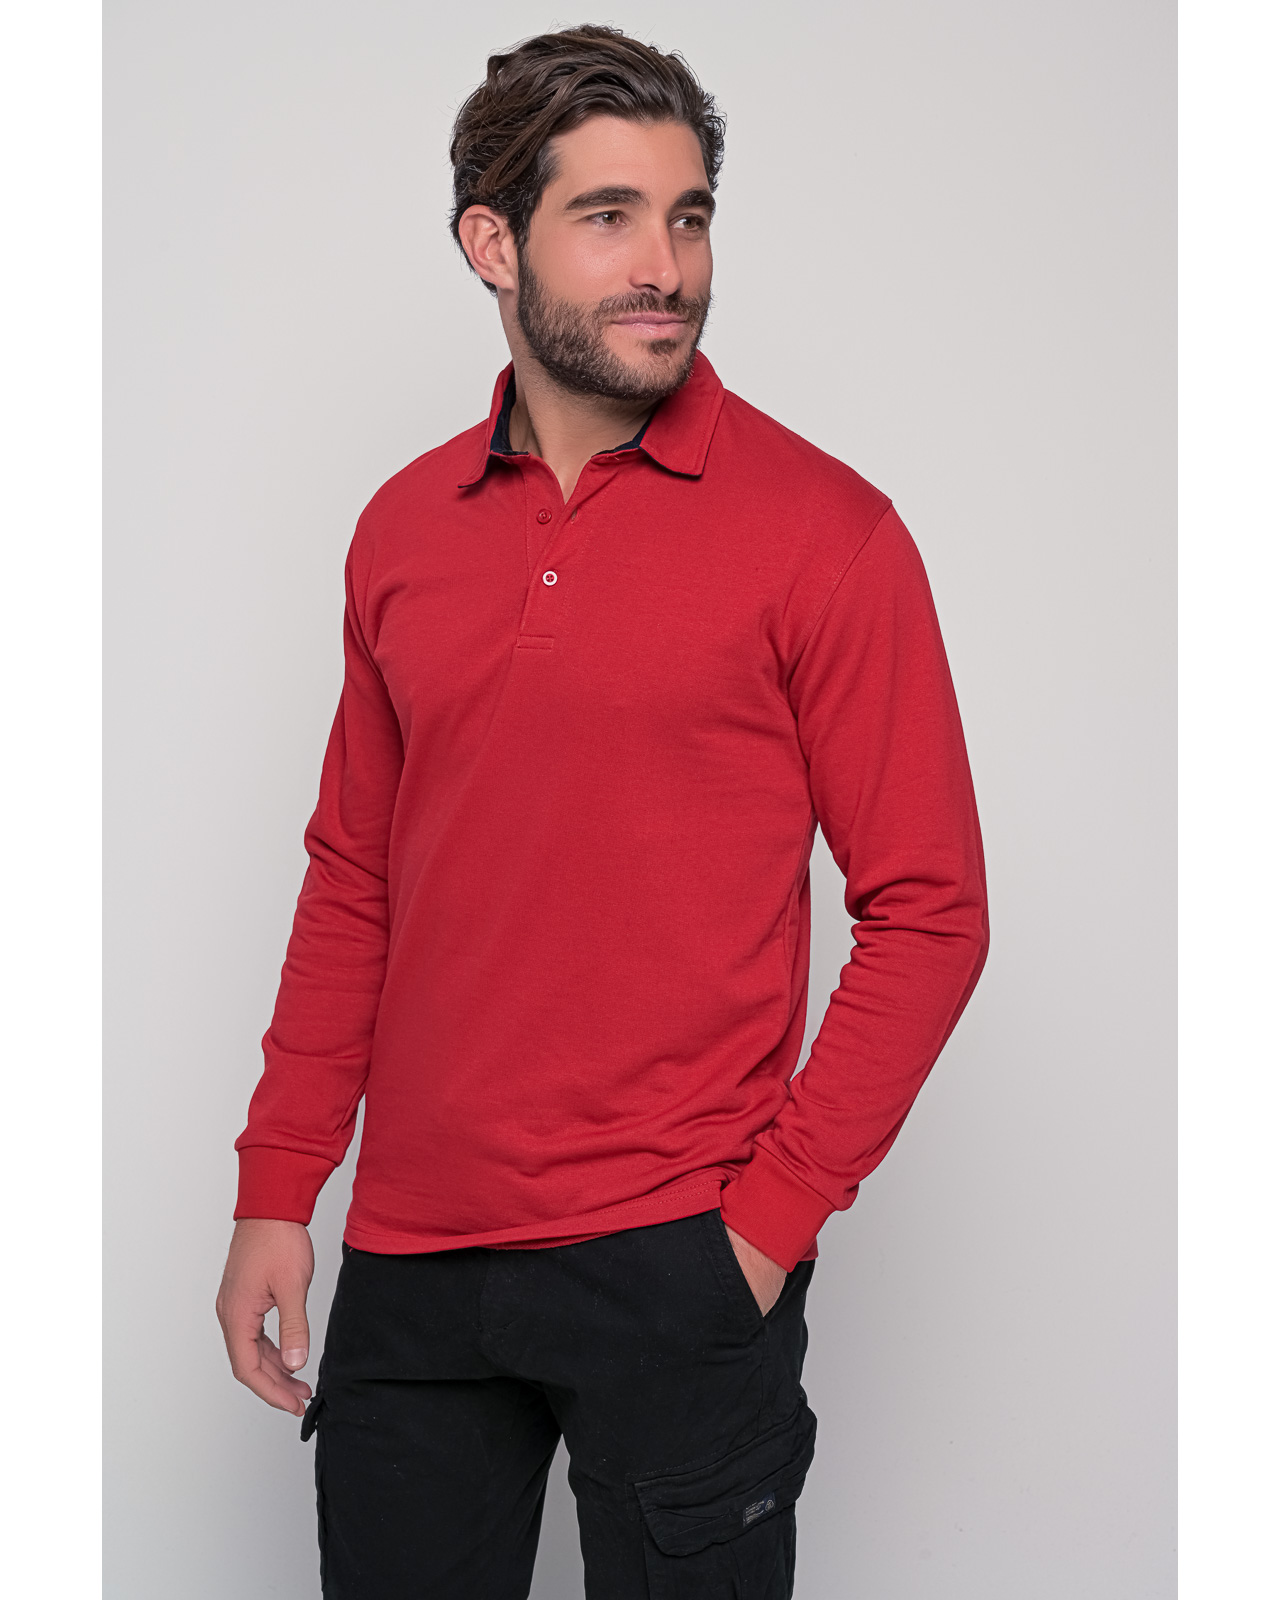 Ανδρικό φούτερ κόκκινο τύπου Polo | Metropolis Fashion City